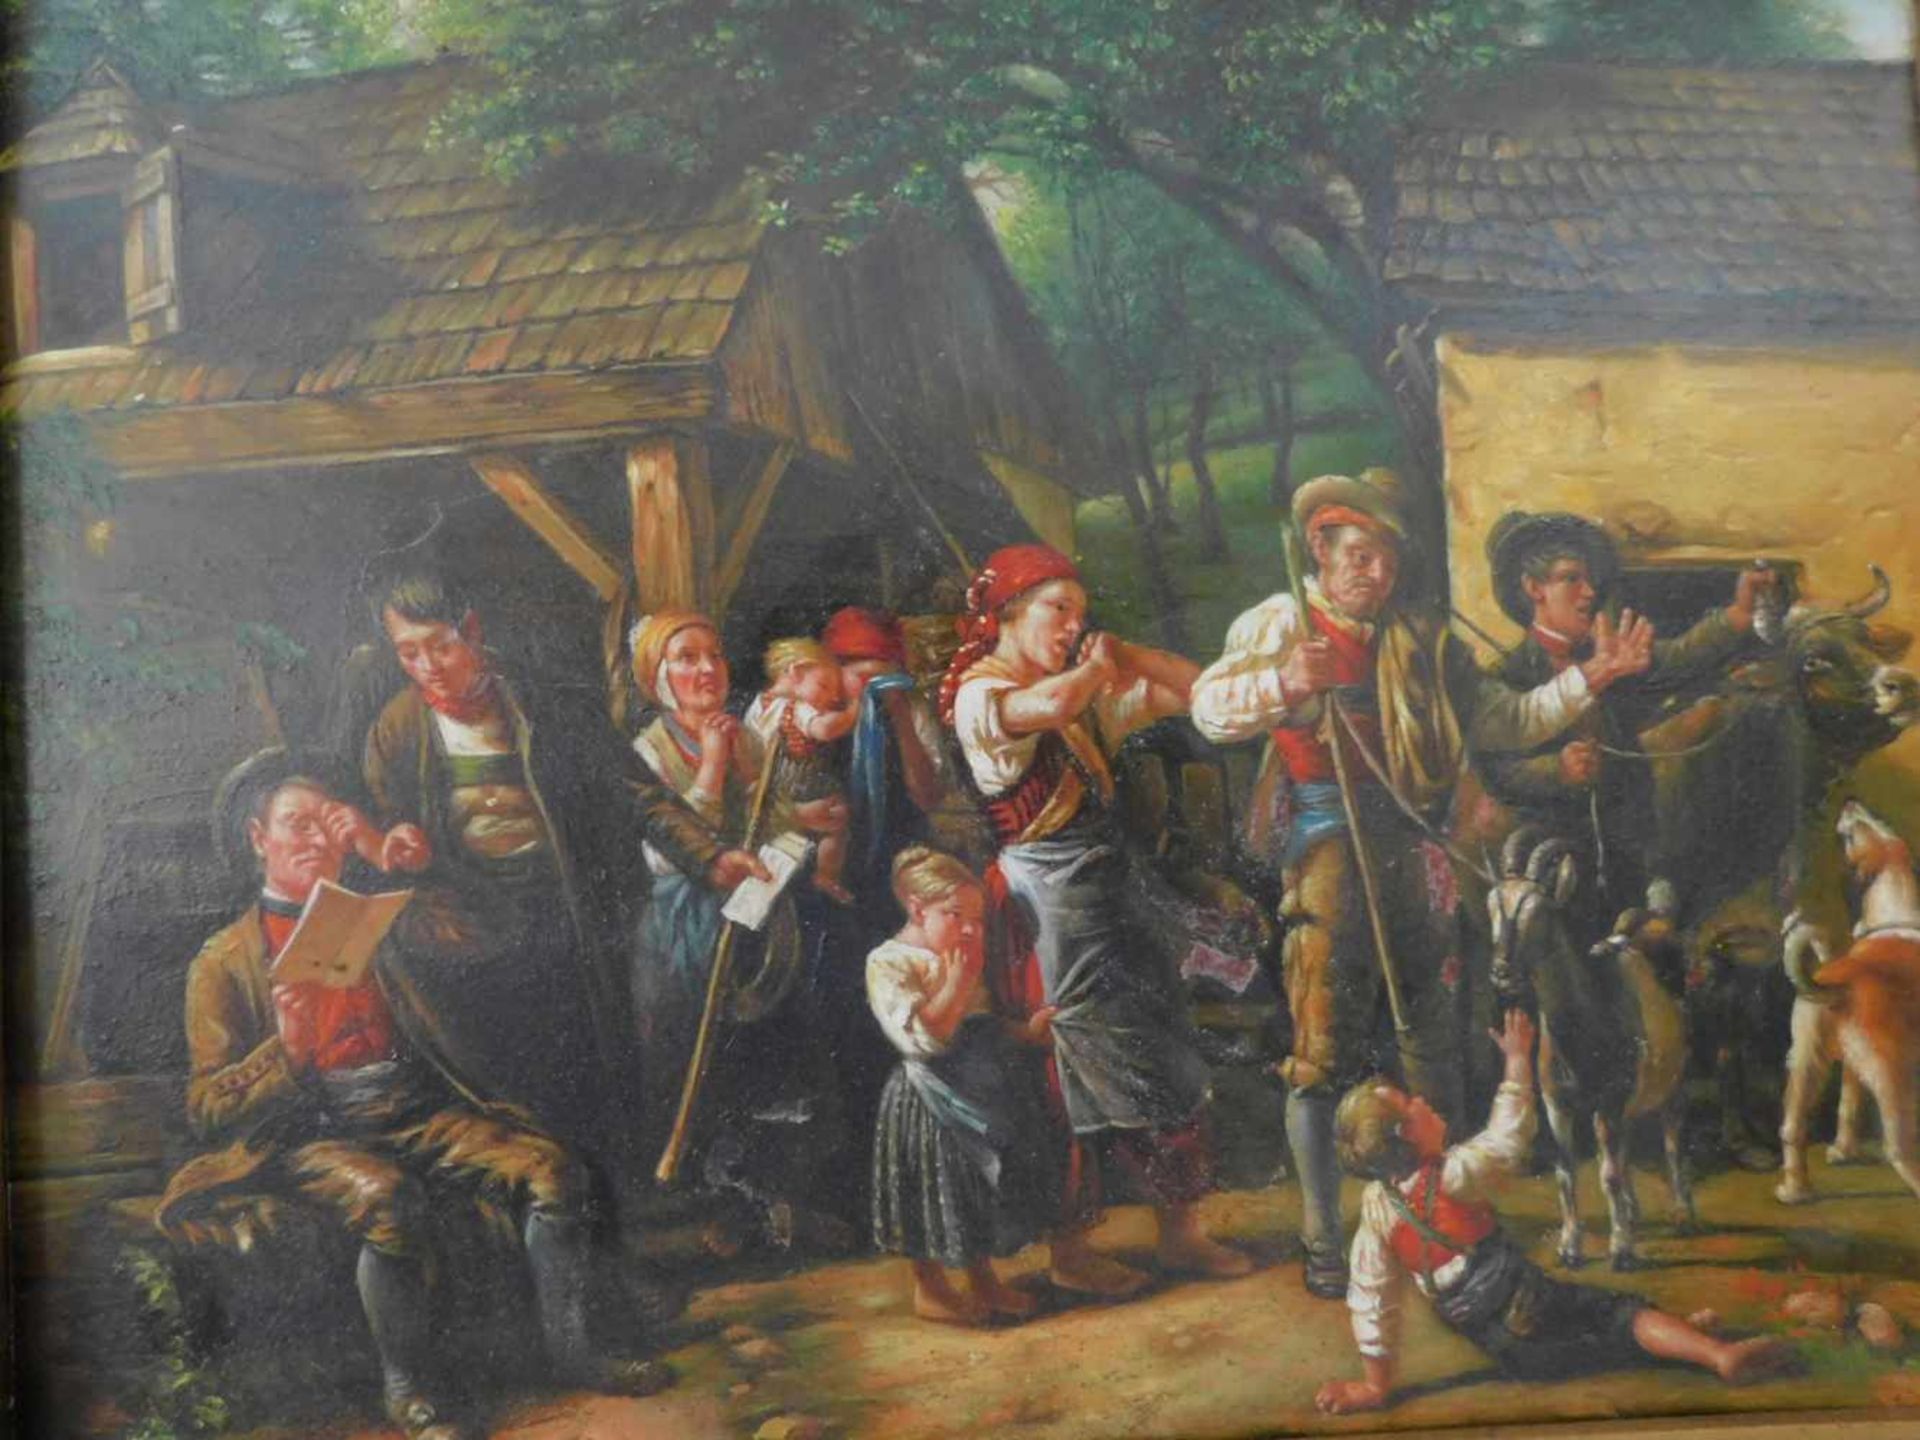 Kopie nach Ferdinand Georg Waldmüller, Die Pfändung, Öl auf Holz, undeutl. signiert unten rechts, um - Bild 2 aus 4